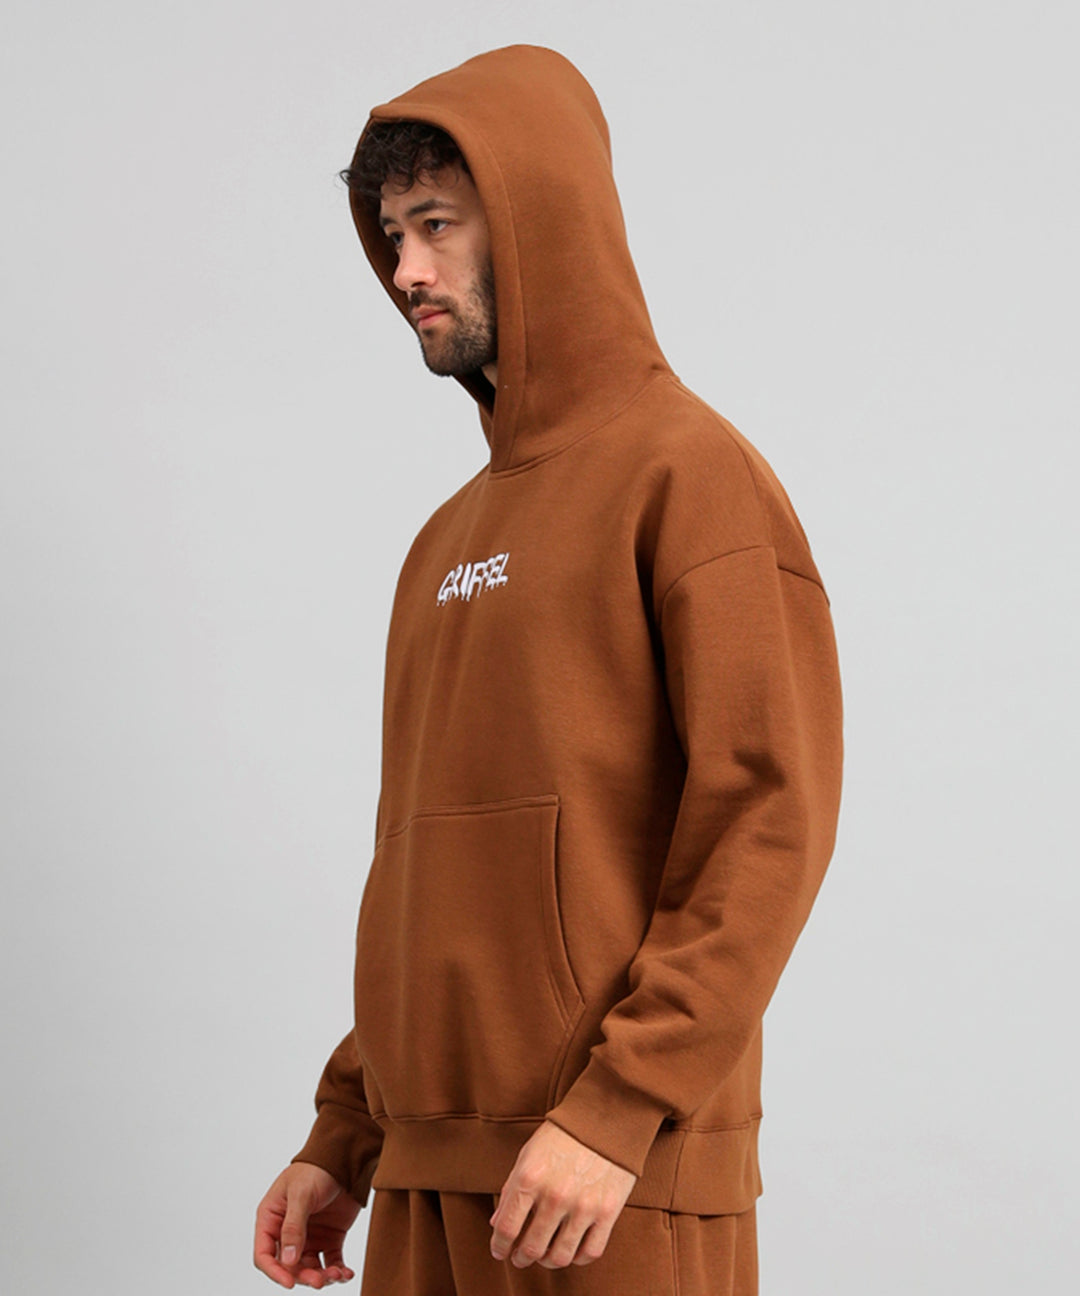 Griffel Men's Brown Bear Family Print Front Logo Oversized Fleece Hoodie Sweatshirt